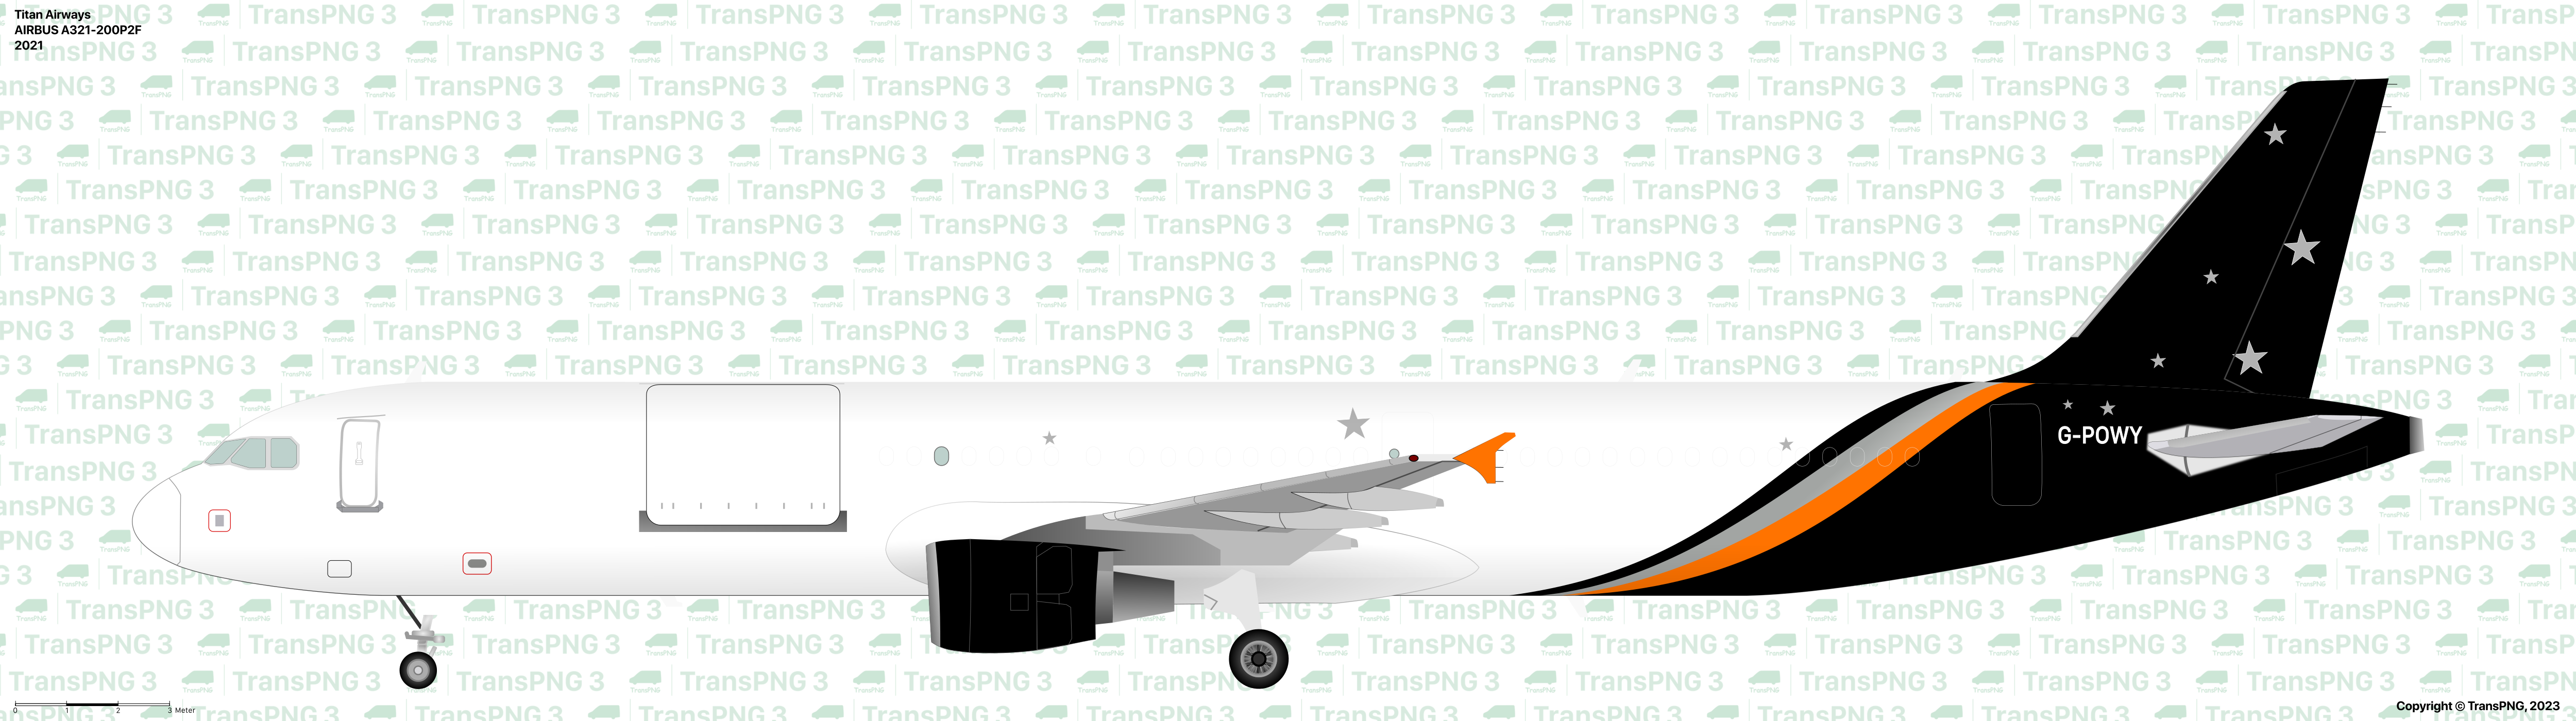 TransPNG.net | 分享世界各地多種交通工具的優秀繪圖 - 貨機 53158187981_8e33fbc408_o